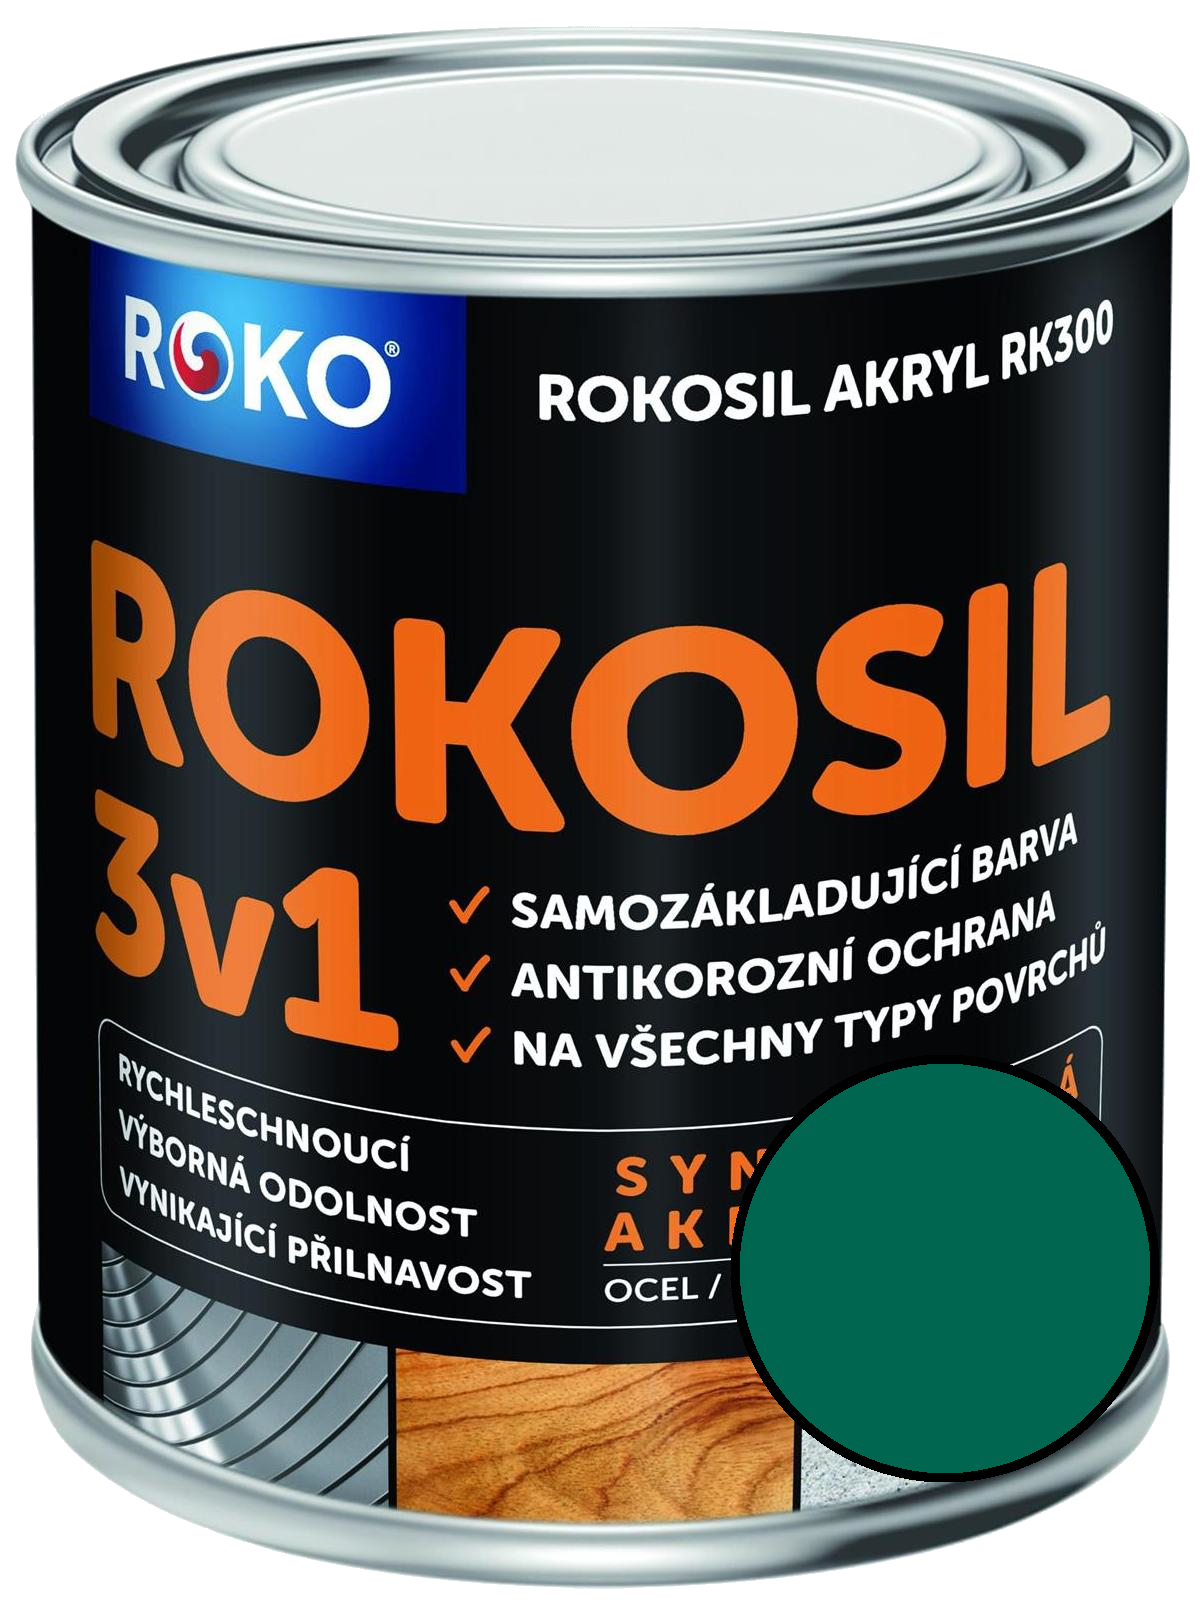 Barva samozákladující Rokosil akryl 3v1 RK 300 5400 zelená tmavá